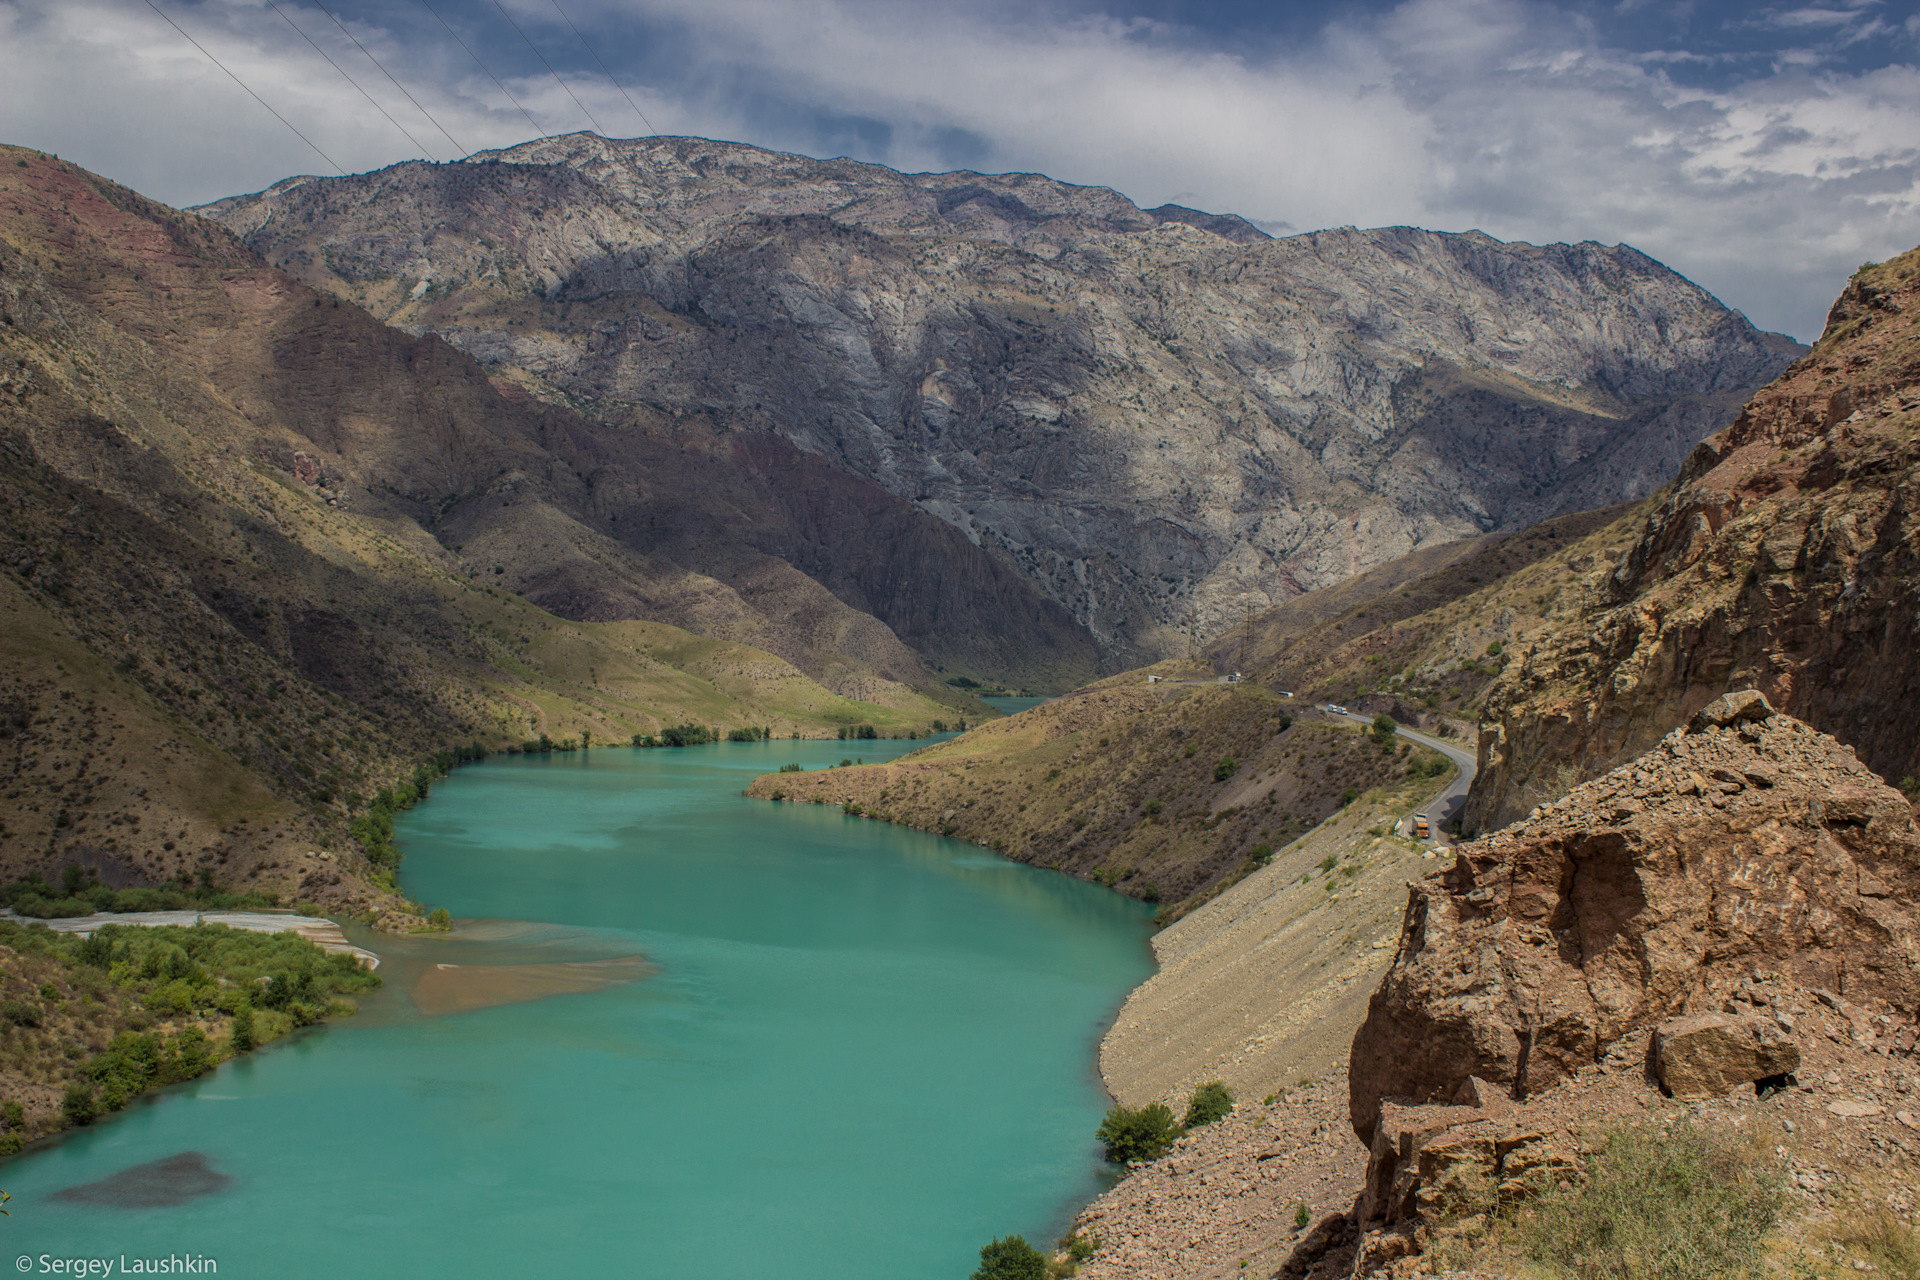 Нарын киргизия. Река Карадарья Киргизия. Река Нарын в Киргизии. Река Чу Тянь-Шань. Таш Кум Нарын.